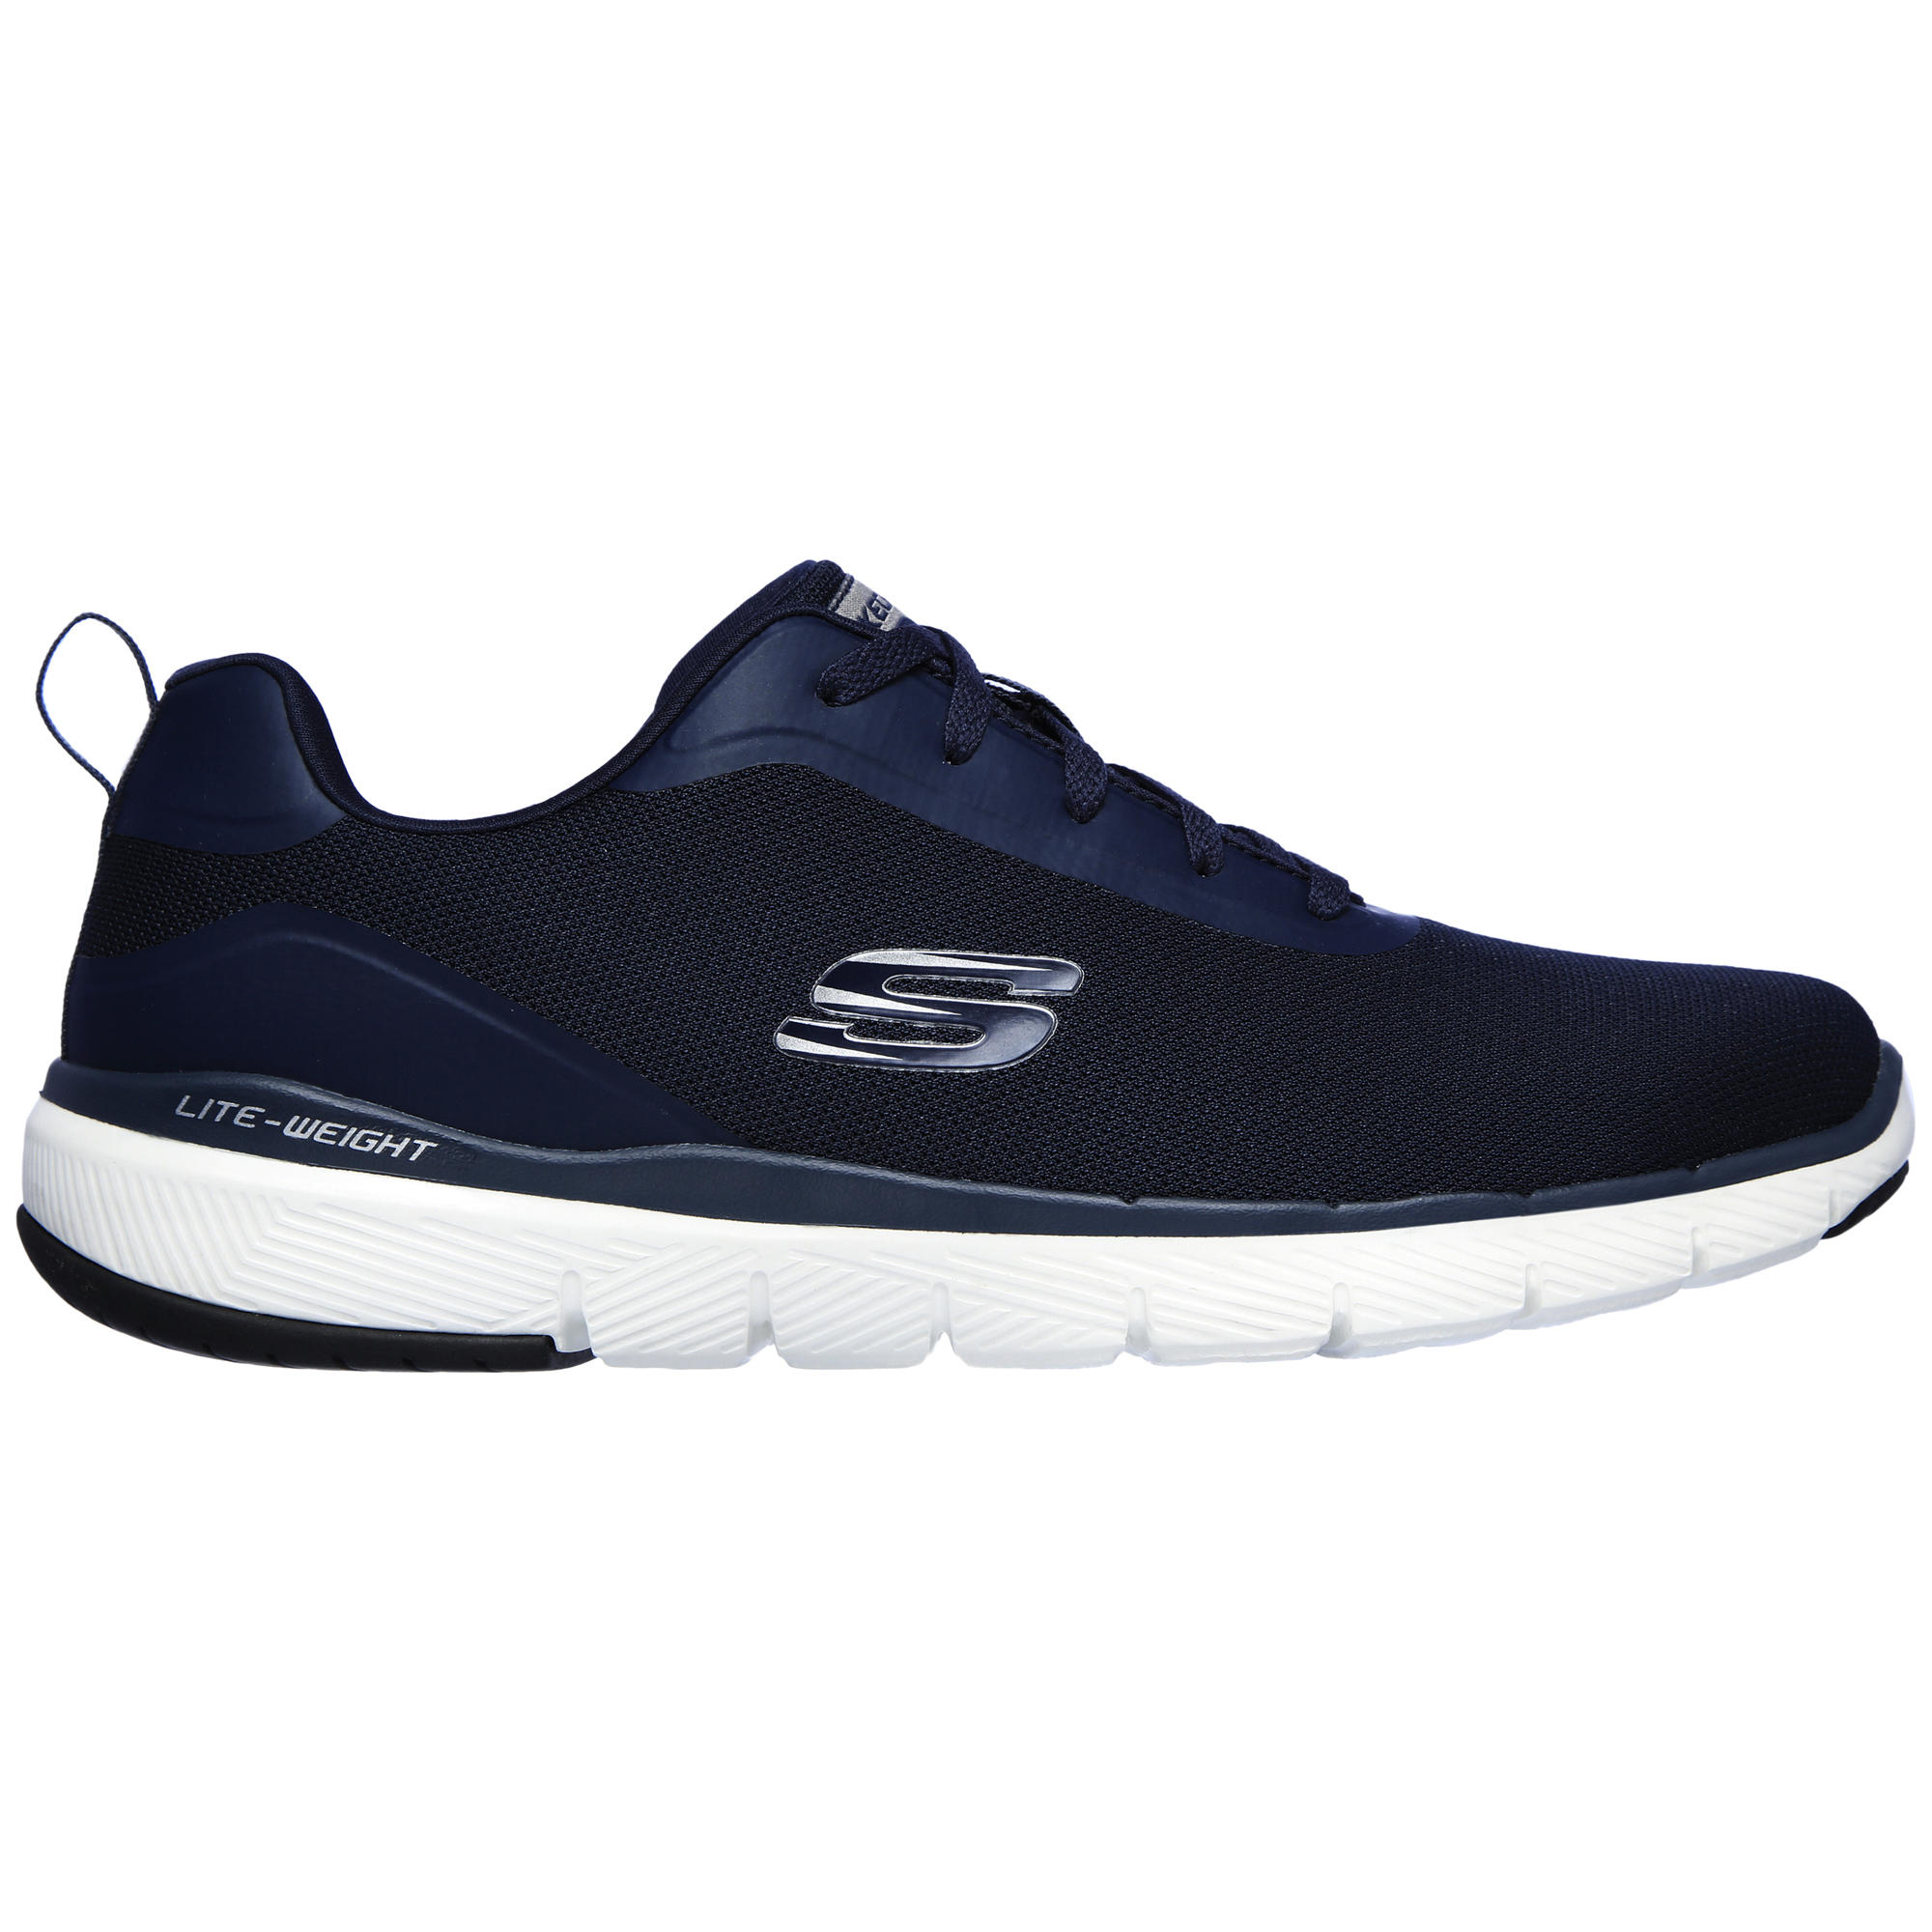 Men's Fitness Walking Shoes Skechers Flex Appeal - blue 2/5